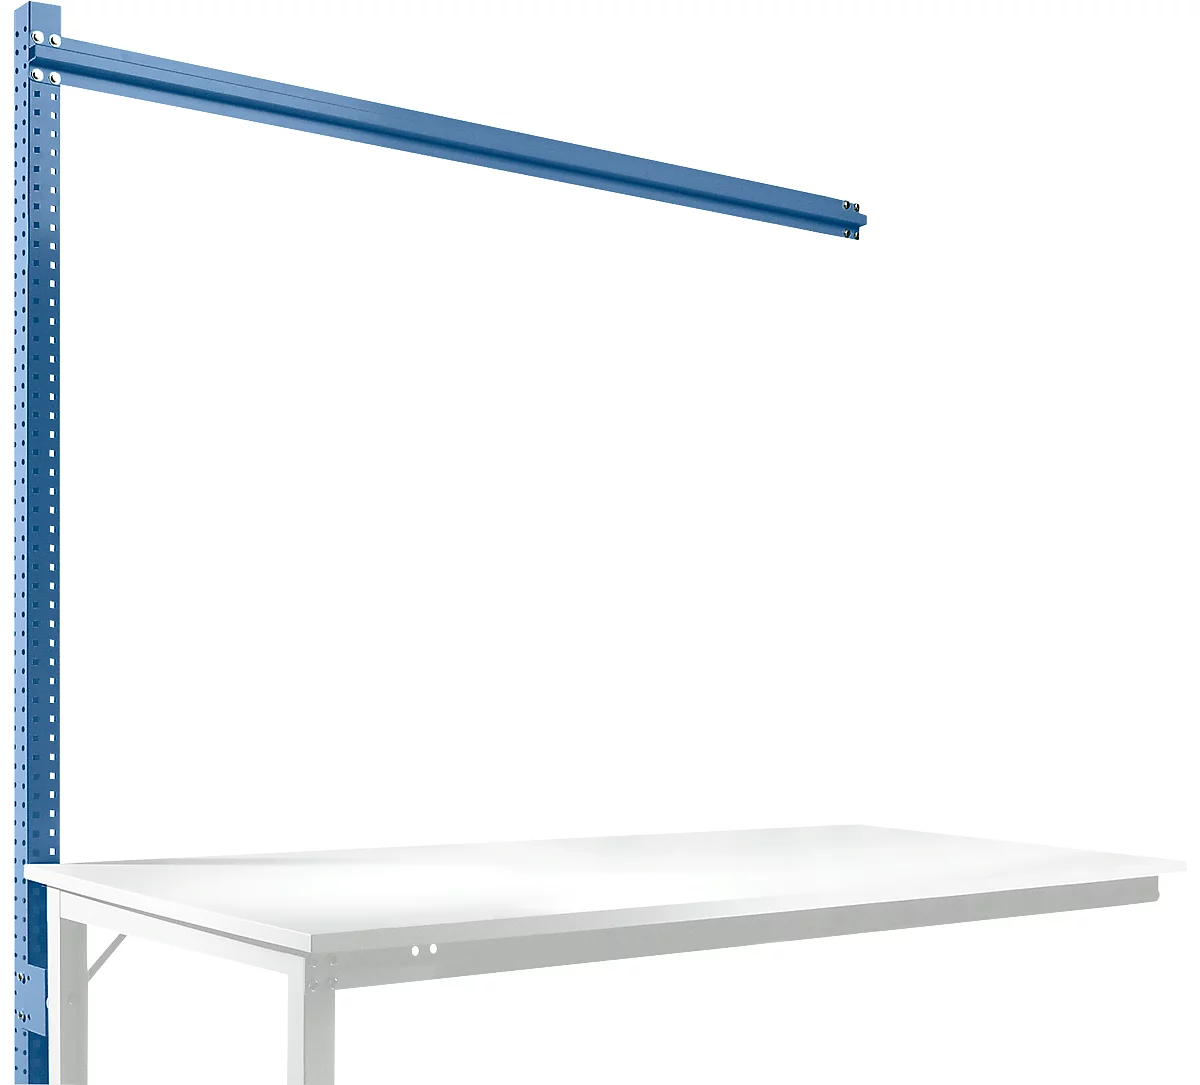 Estructura pórtica adicional para mesa de extensión STANDARD sistema mesa de trabajo/banco de trabajo UNIVERSAL/PROFI, 1750 mm, azul brillante